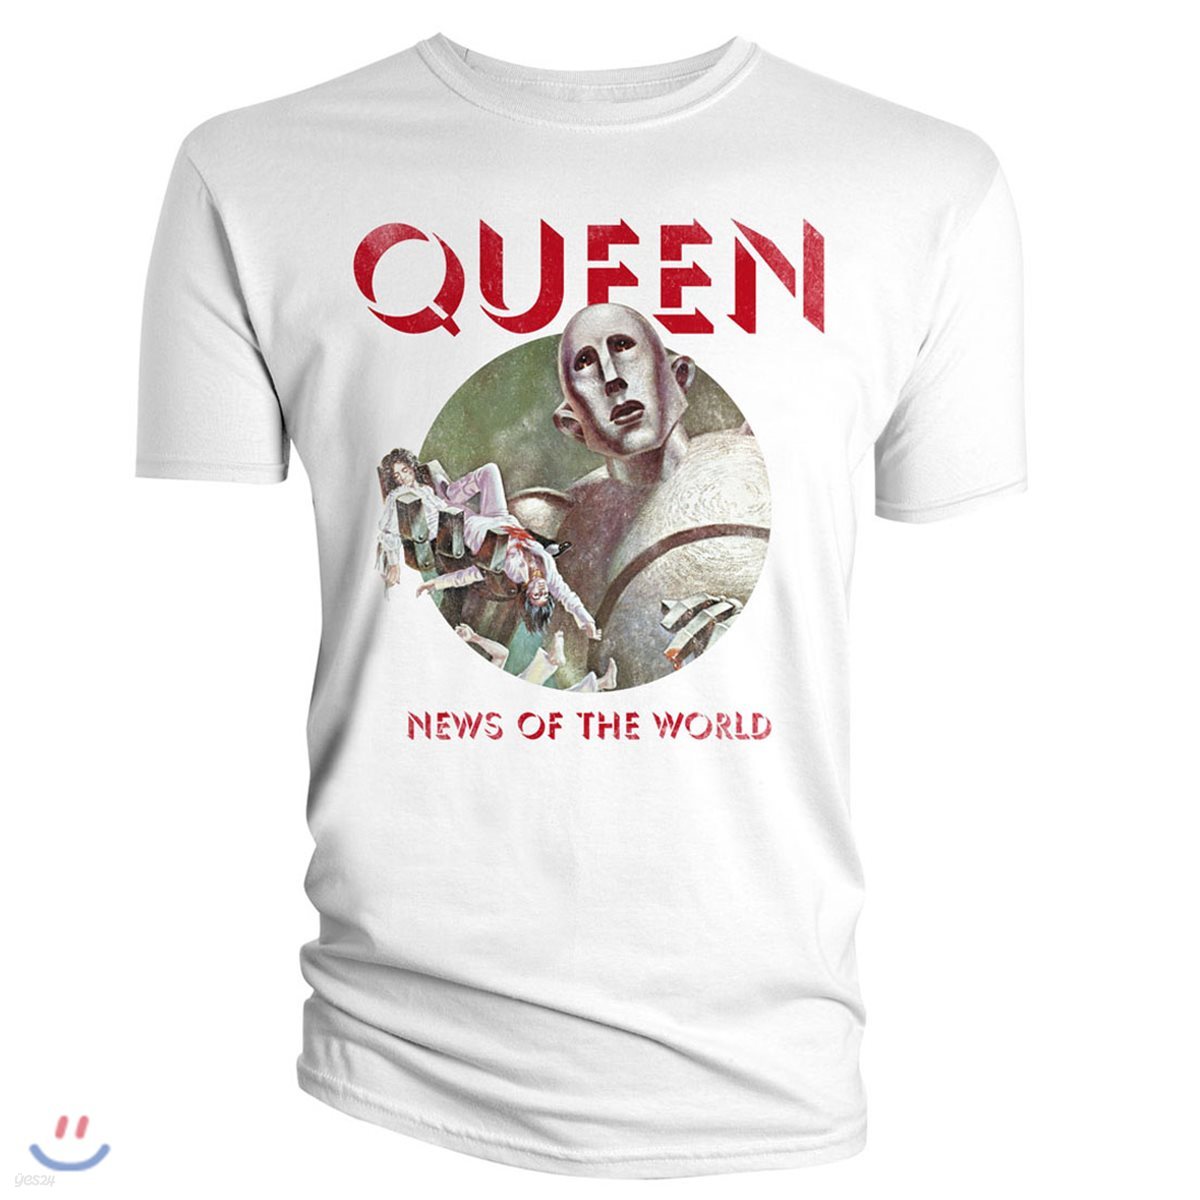 퀸 브라바도 News Of The World 티셔츠 [L사이즈] (Queen T-Shirt News Of The World)